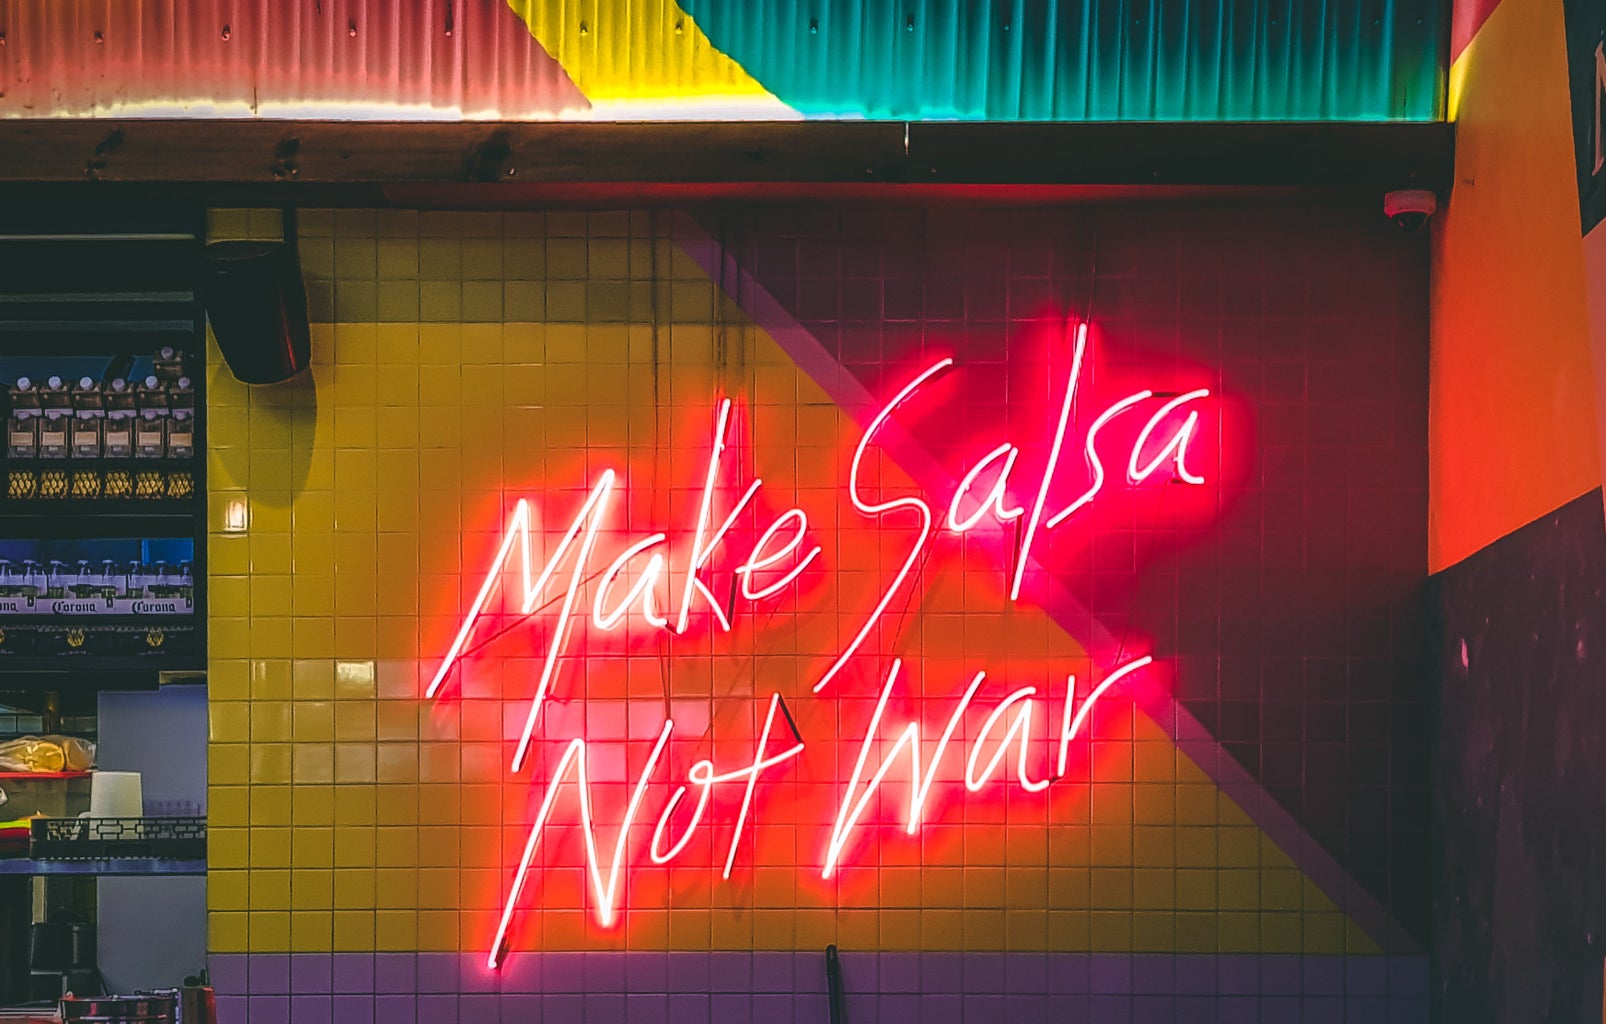 Make salsa not war neon sign